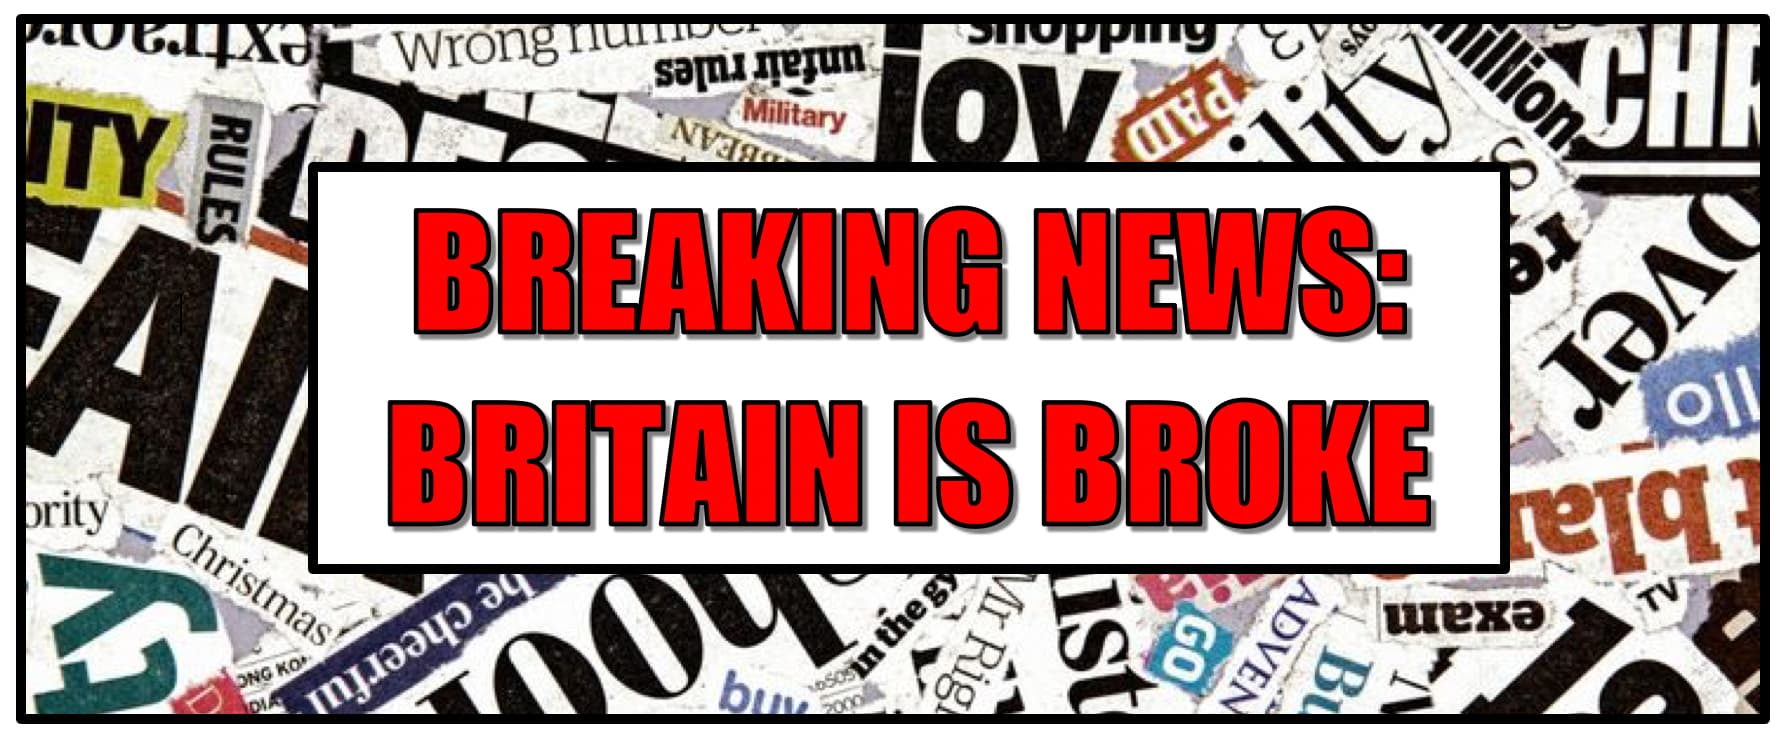 HEADER - BREAKING NEWS - BRITAIN IS BROKE